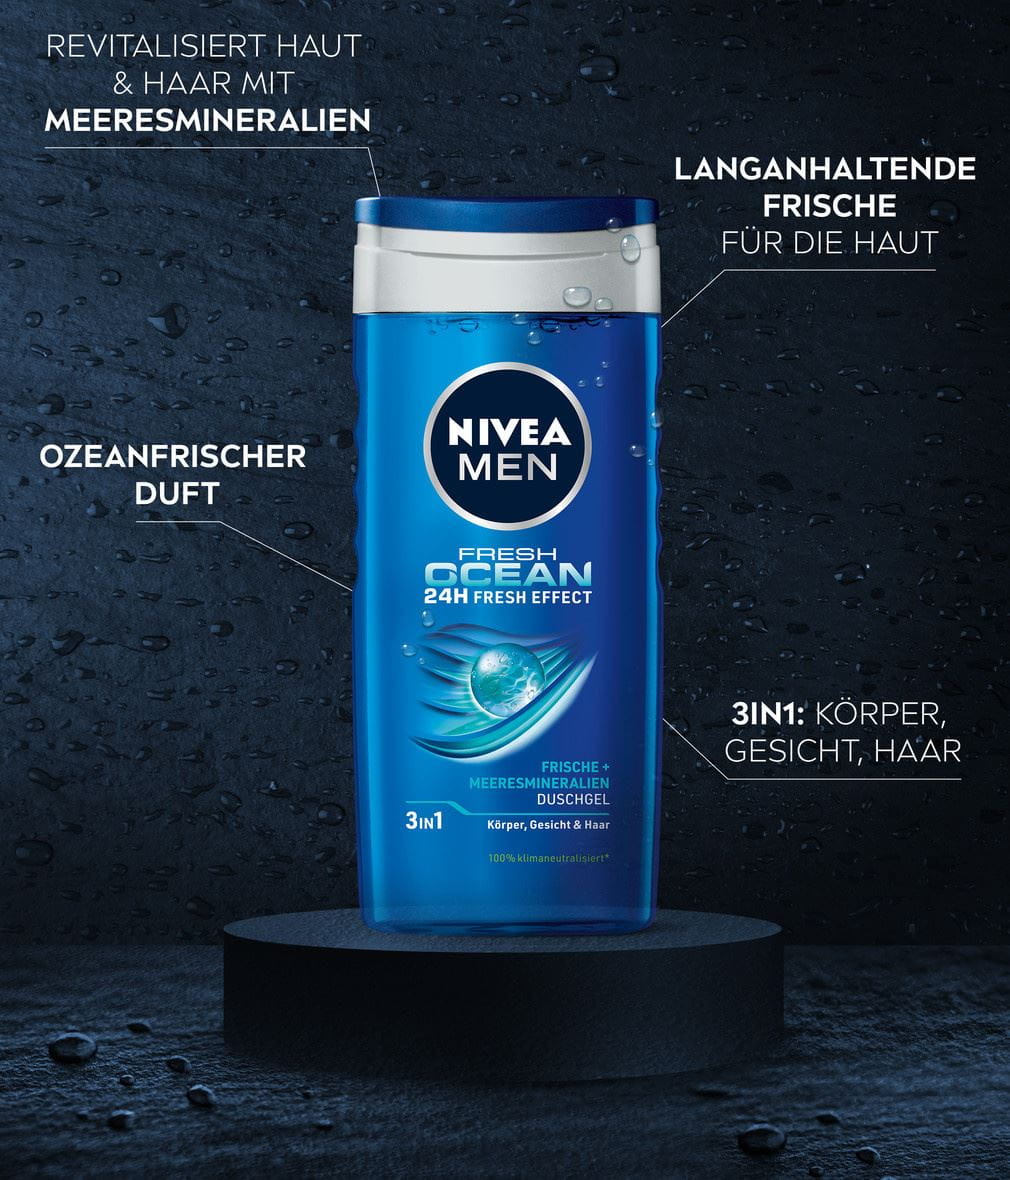 NIVEA MEN Duschgel FRESH OCEAN 24 H FRESH EFFECT Benefits